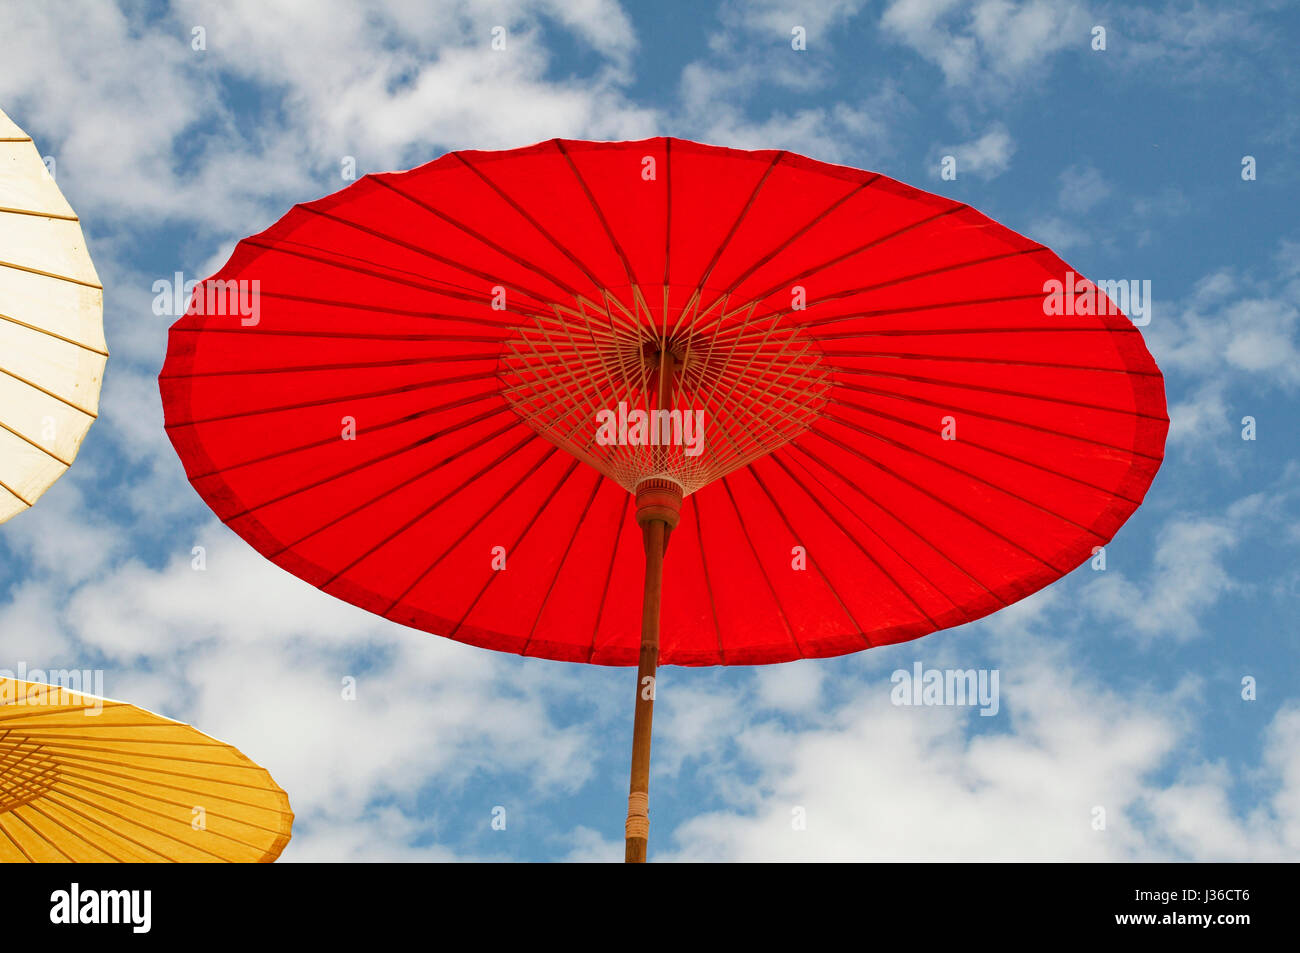 Colorful red sun umbrella Stock Photo